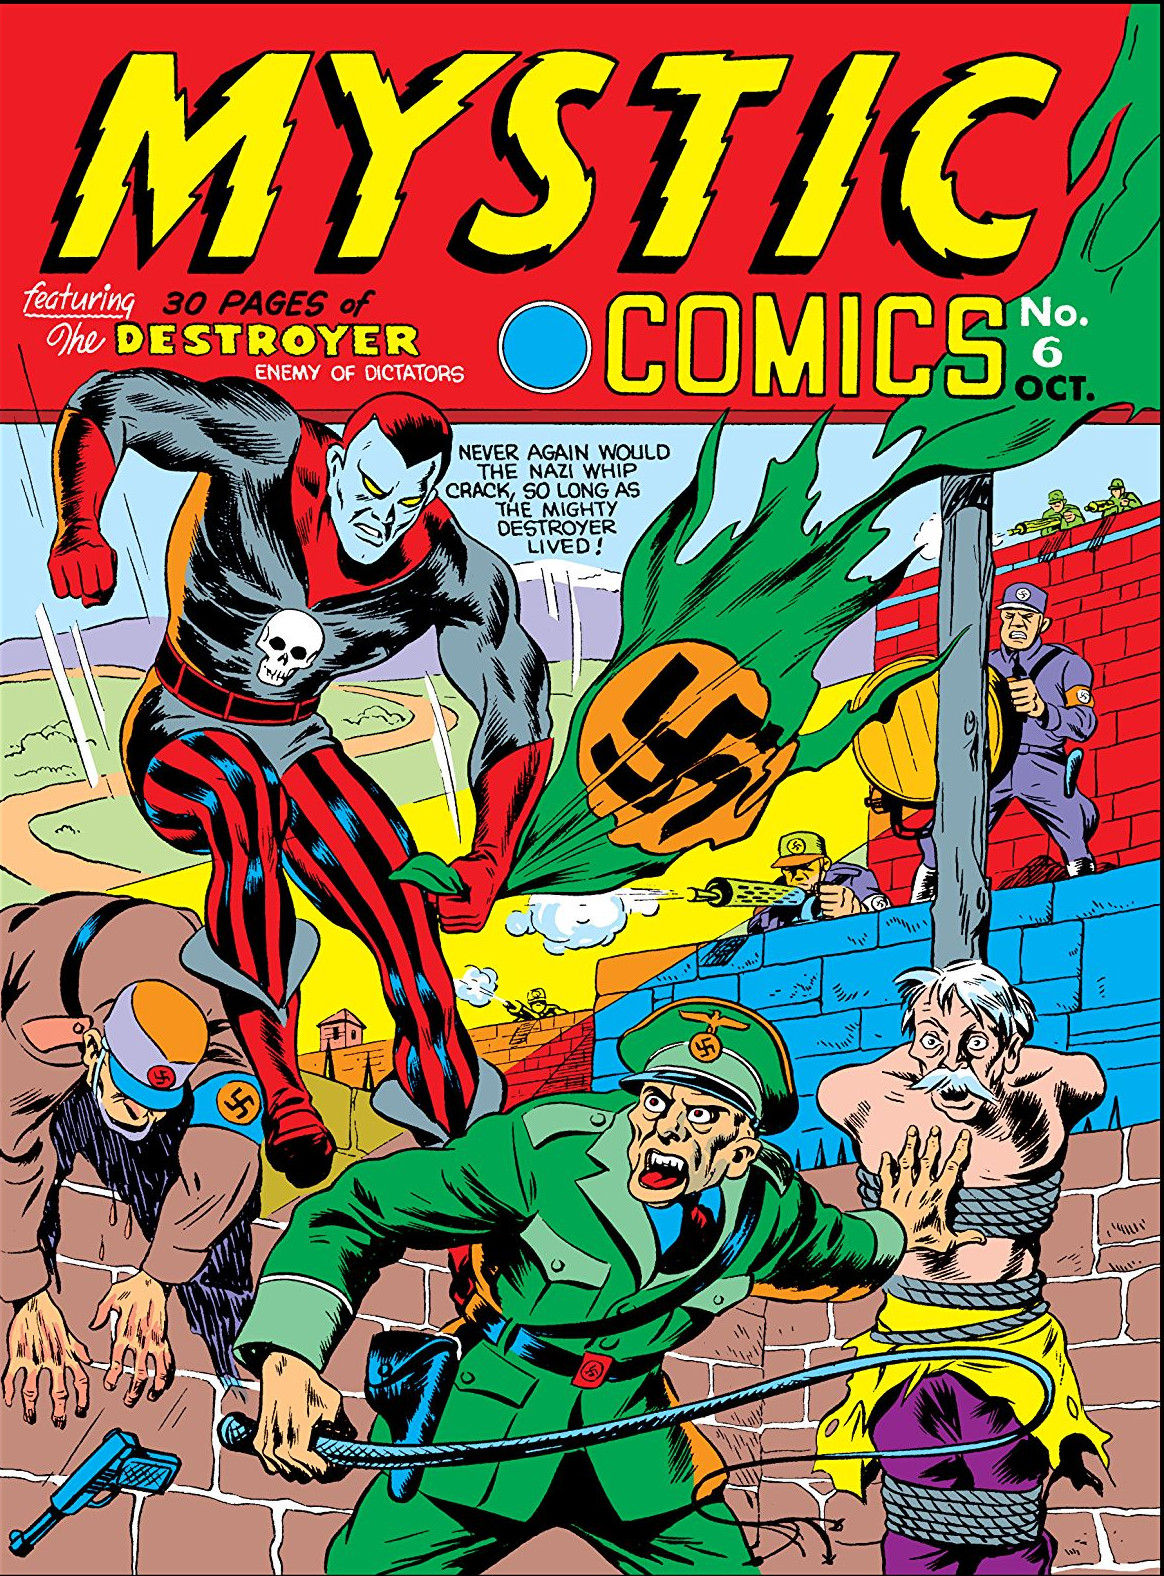 Cat-Man Comics #1 (Vol. 1 #6): 1941 Superhero Comic